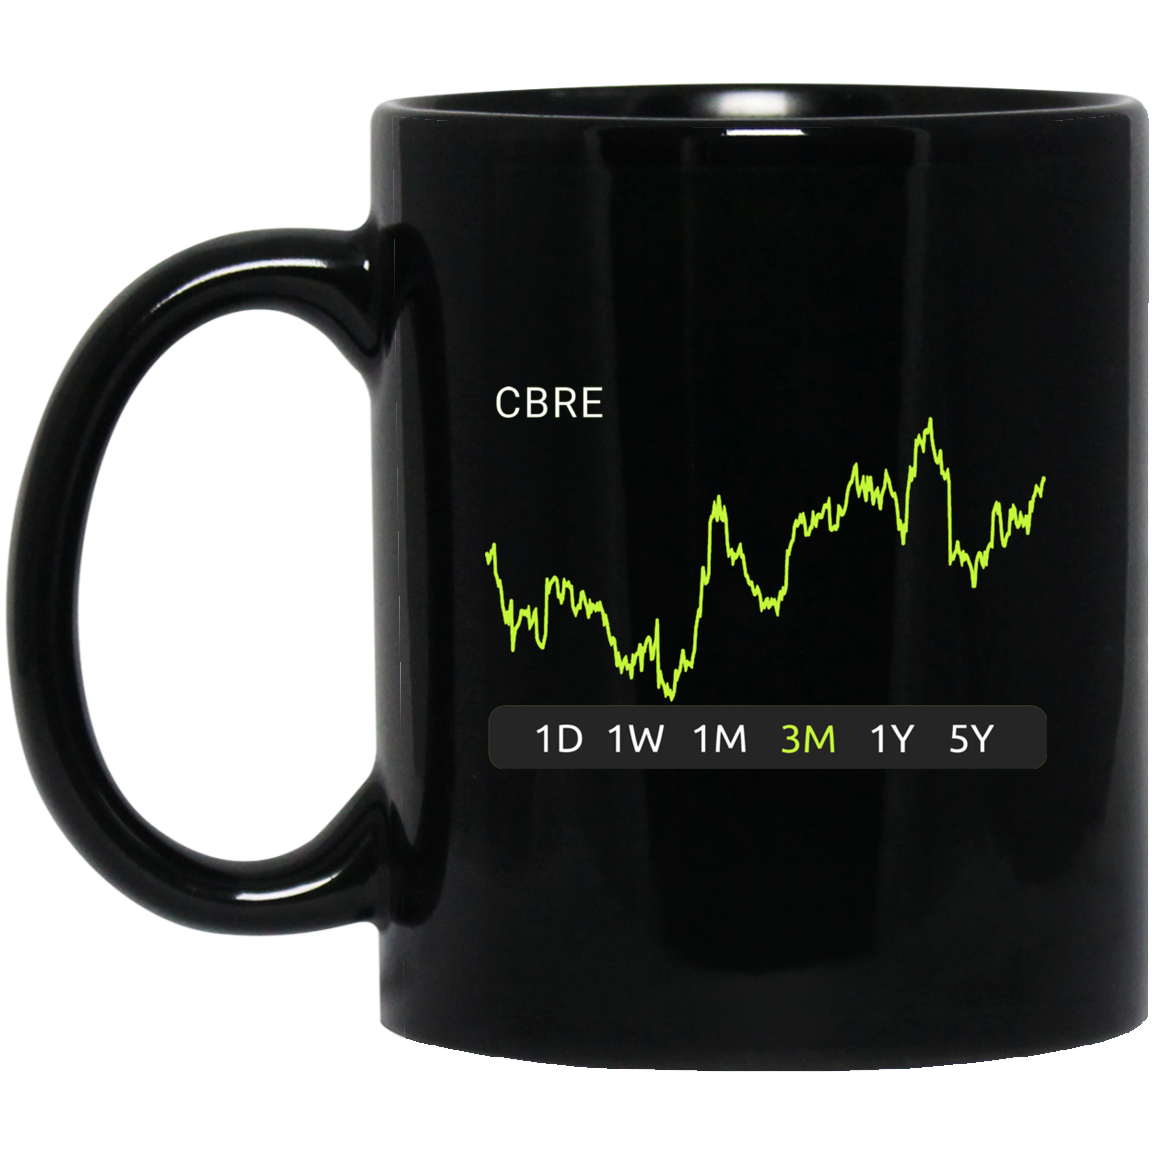 CBRE Stock 3m Mug